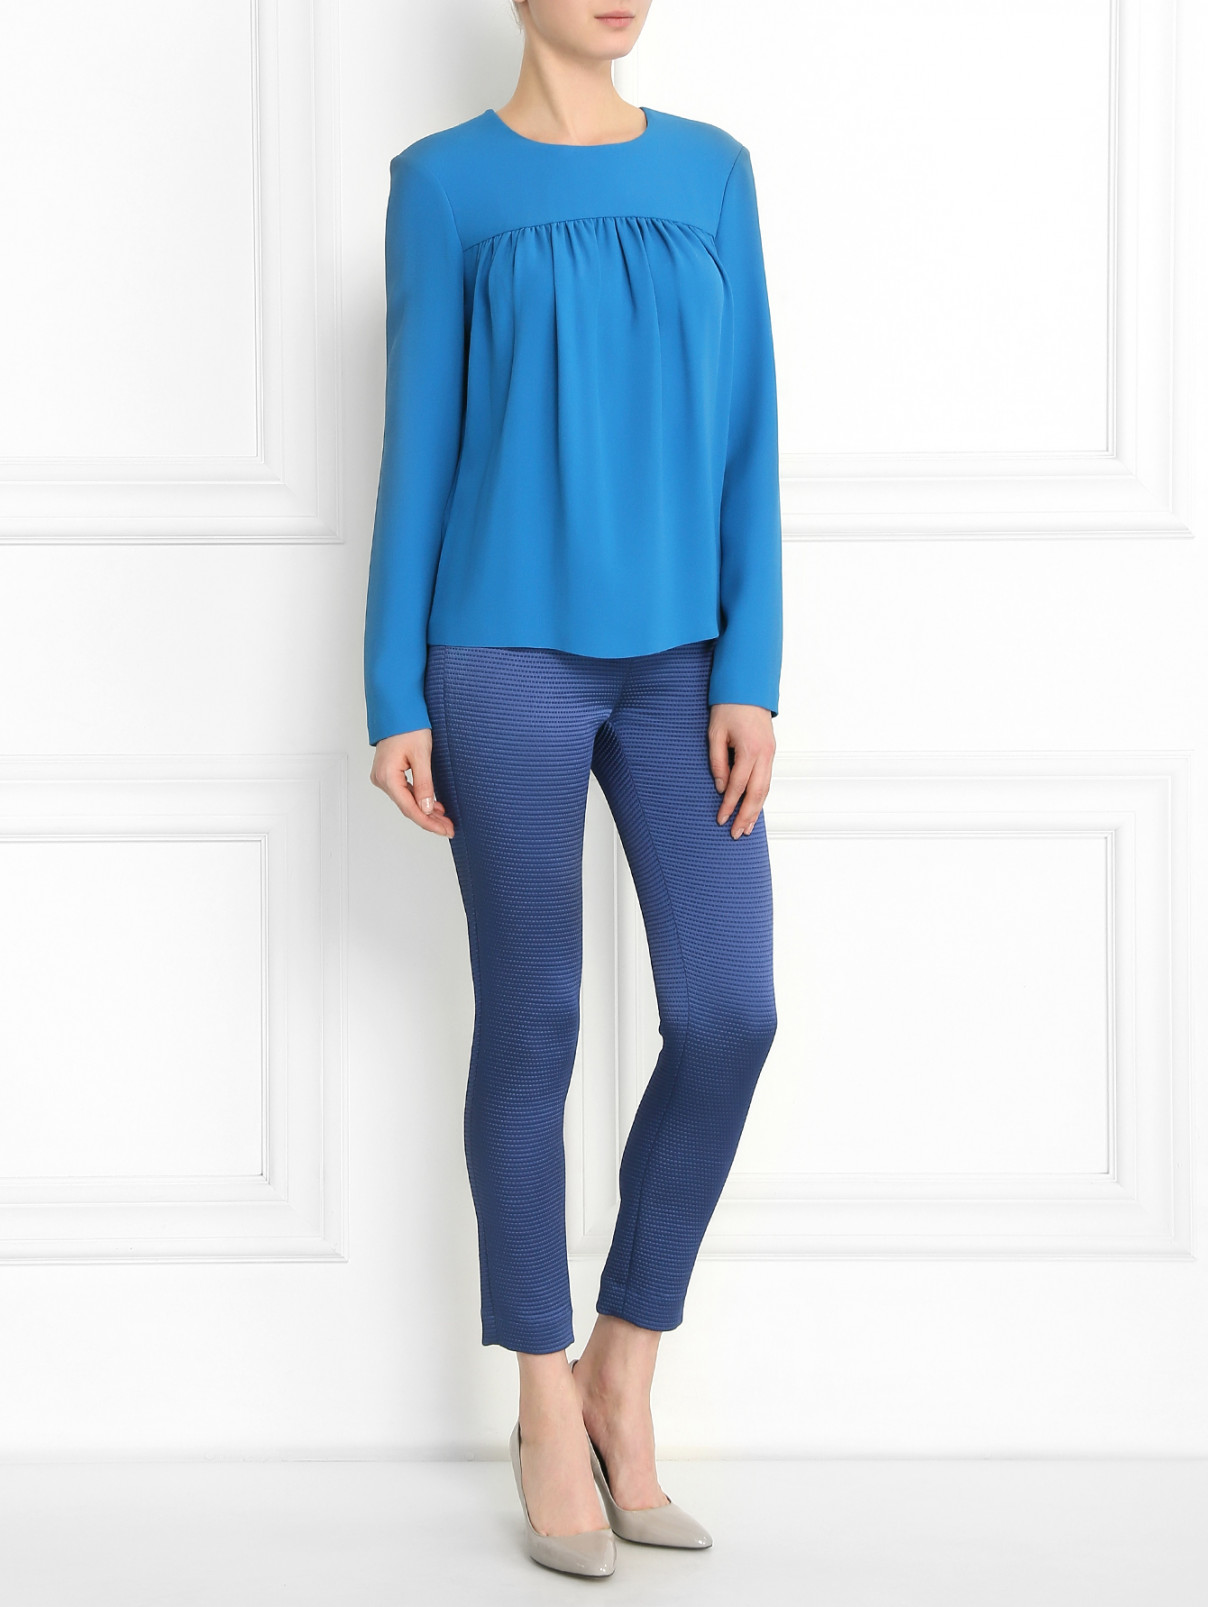 Блуза из хлопка и пеньки Strenesse  –  Модель Общий вид  – Цвет:  Синий